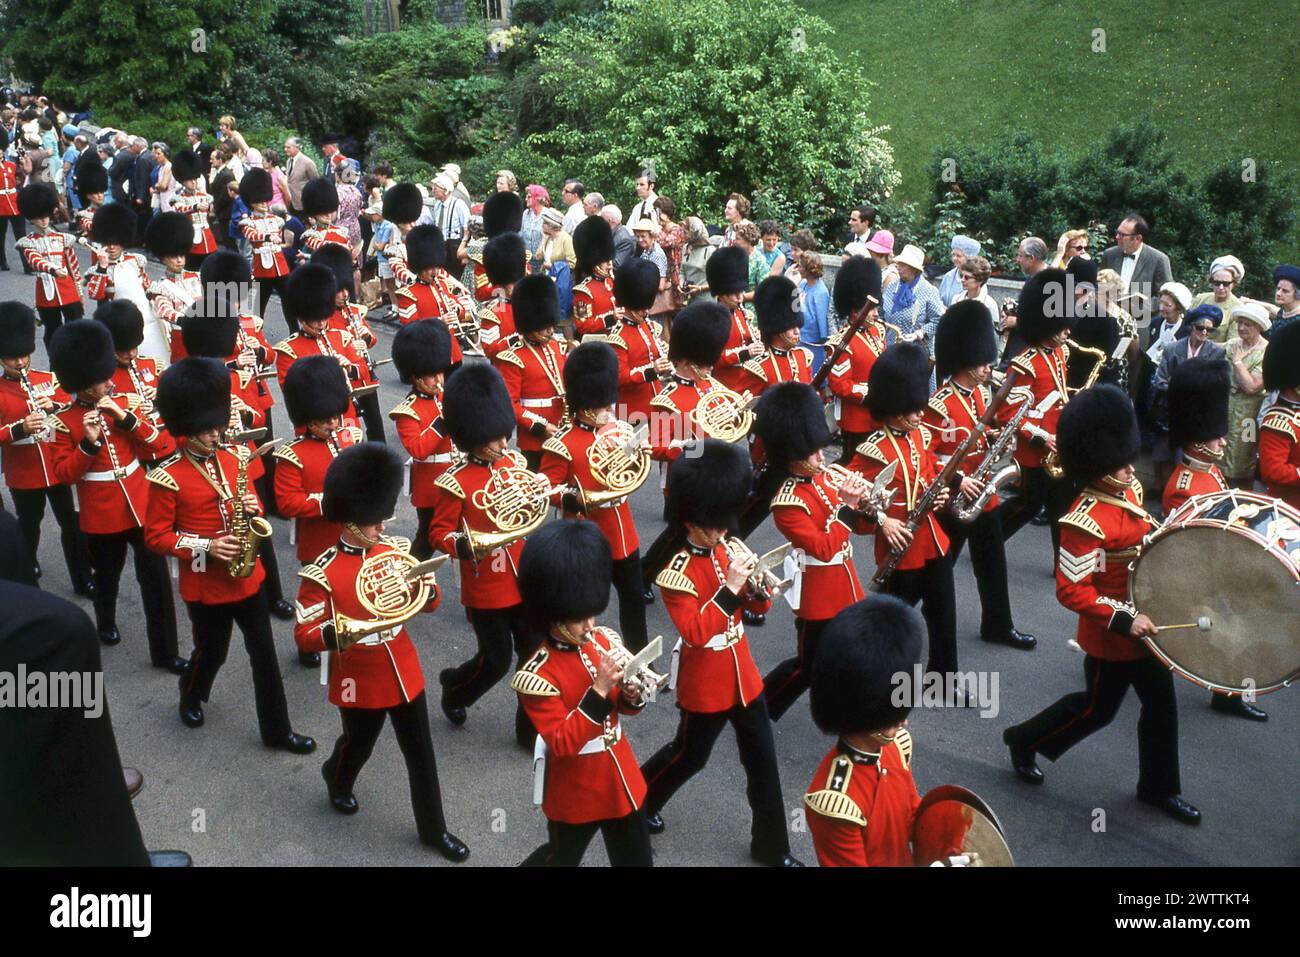 Années 1960, historique, vue d'en haut de la bande des Grenadier Guards en uniforme complet et bonnet de fourrure traditionnel, connu sous le nom de peaux d'ours, jouant de leurs instruments alors qu'ils marchent à l'ordre de la Jarretière et procession événement au château de Windsor, Berkshjire, Angleterre, Royaume-Uni. L'un des groupes militaires les plus anciens et les plus célèbres, avec une longue histoire, datant de 1665, le groupe, dans le cadre des groupes de la Household Division, joue lors d'importants cérémonies britanniques et événements royaux. Banque D'Images